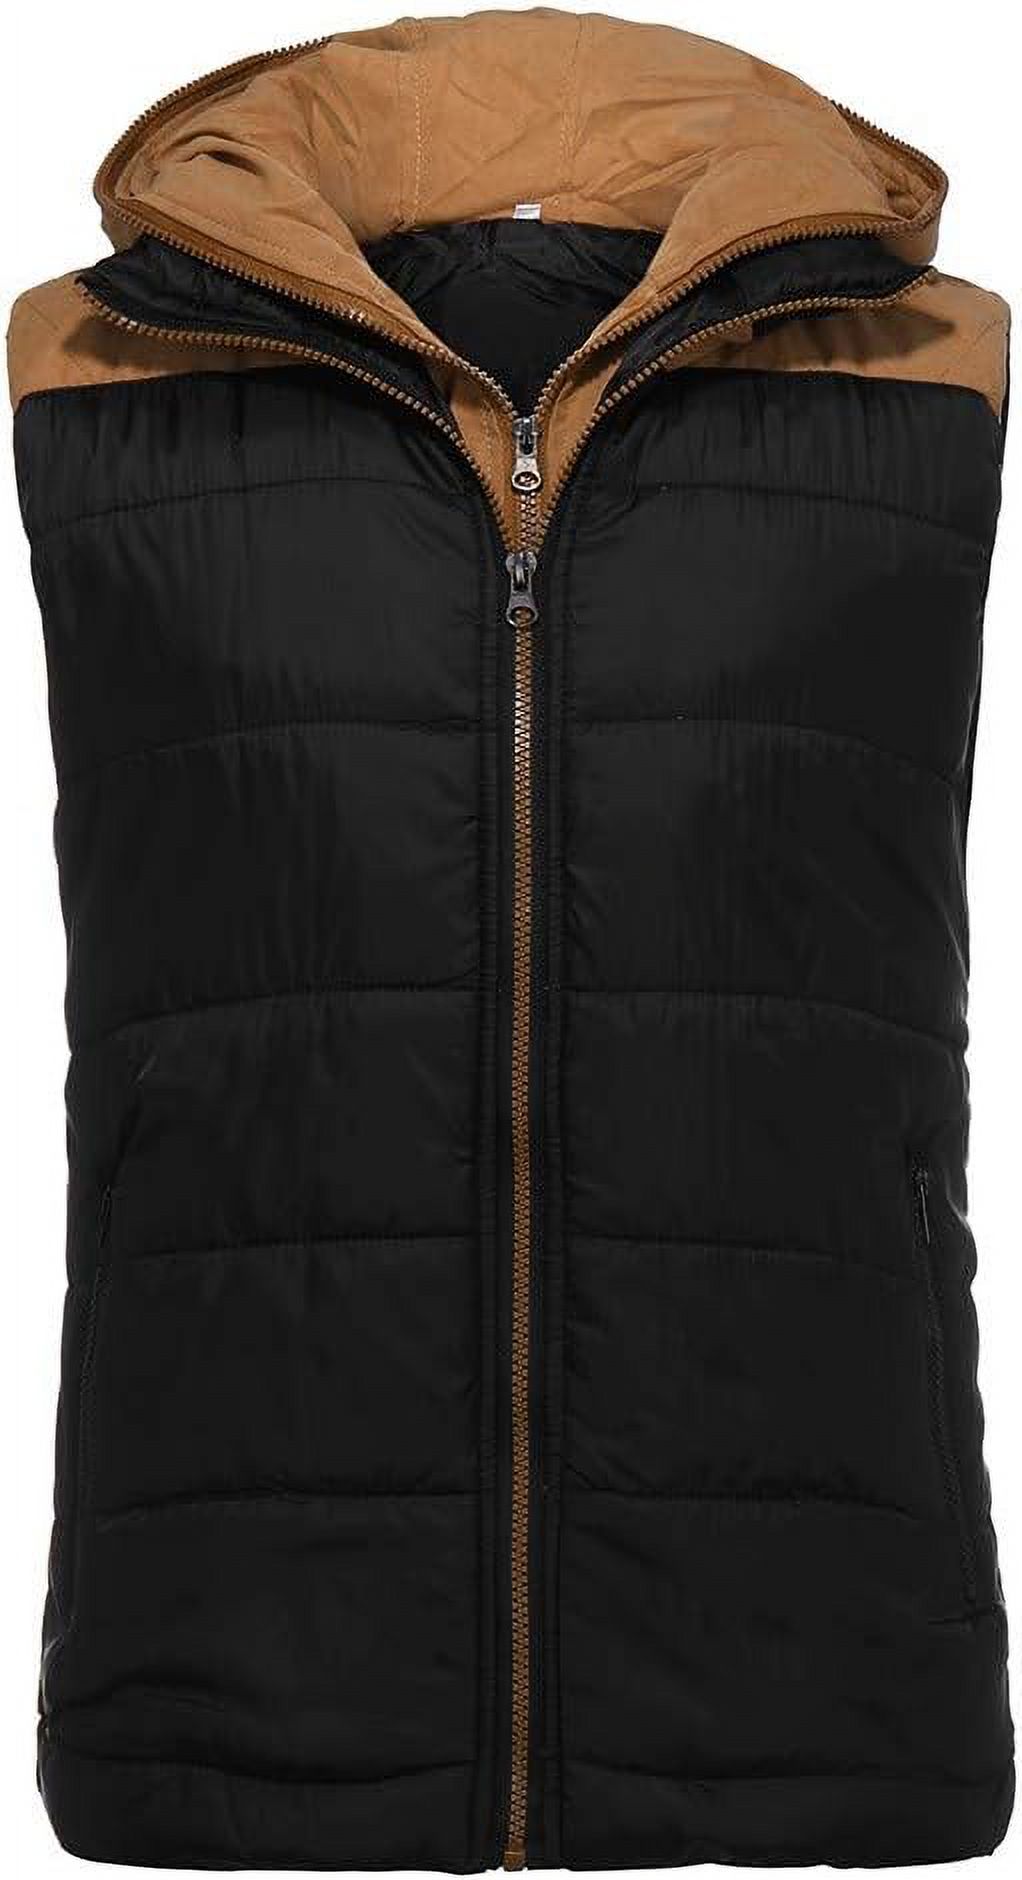 Jacket Men's Hoodie Autumn Winter Zipper Fashion Color Waistcoat Vest ...